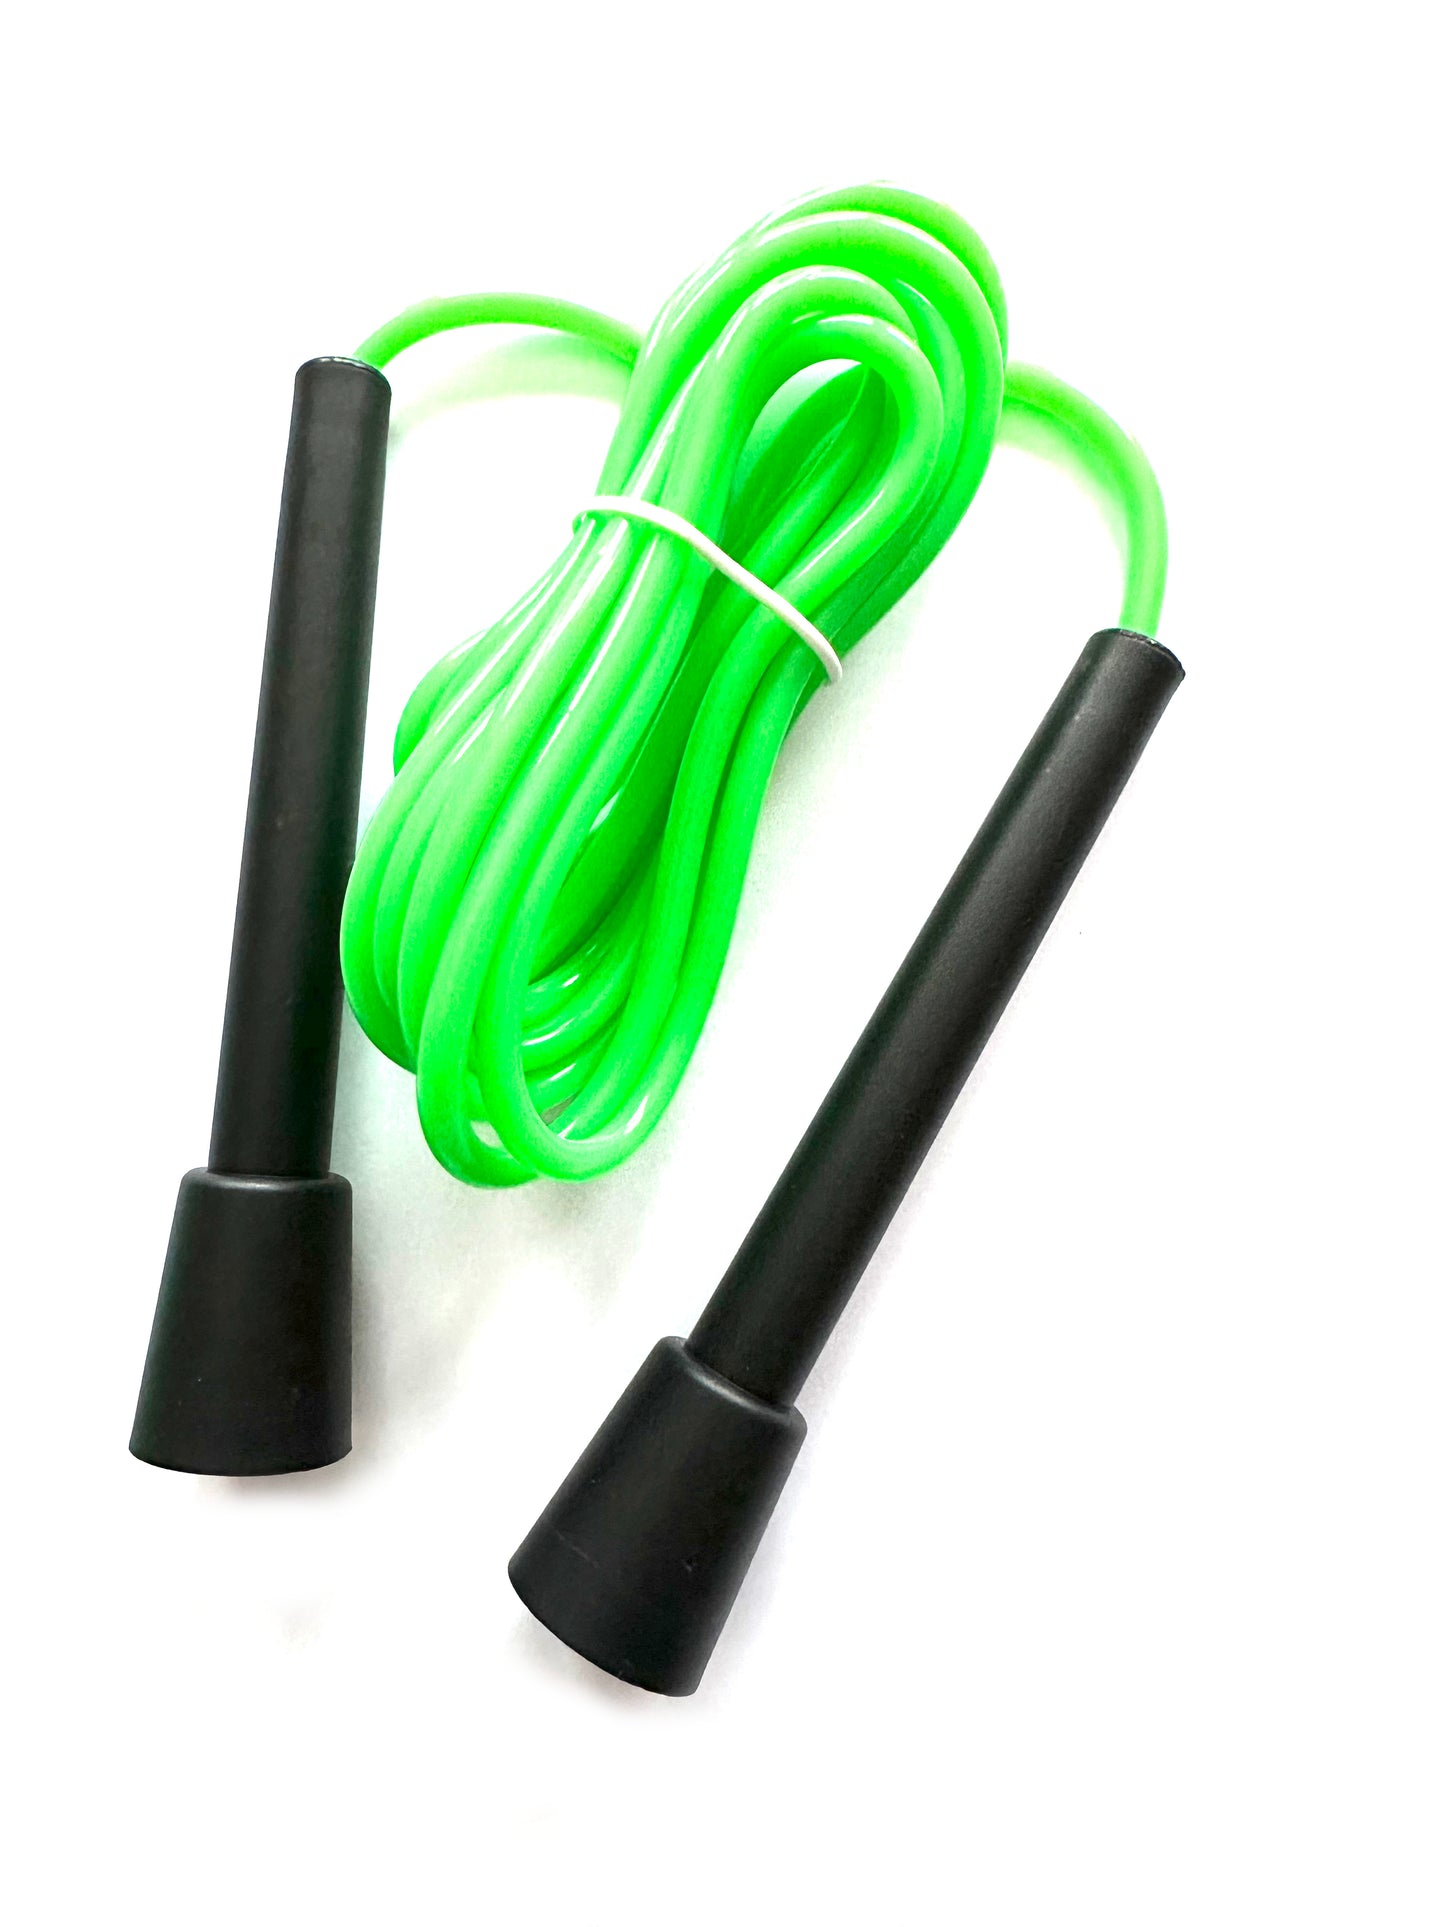 Standard-repet | Trasselfritt PVC hopprep i flera utföranden. Bra allround rep för nybörjare som proffs.
Specifikationer


Vikt: 100g

Längd på rep: 3m

Material: PVC / PP plast

Rep